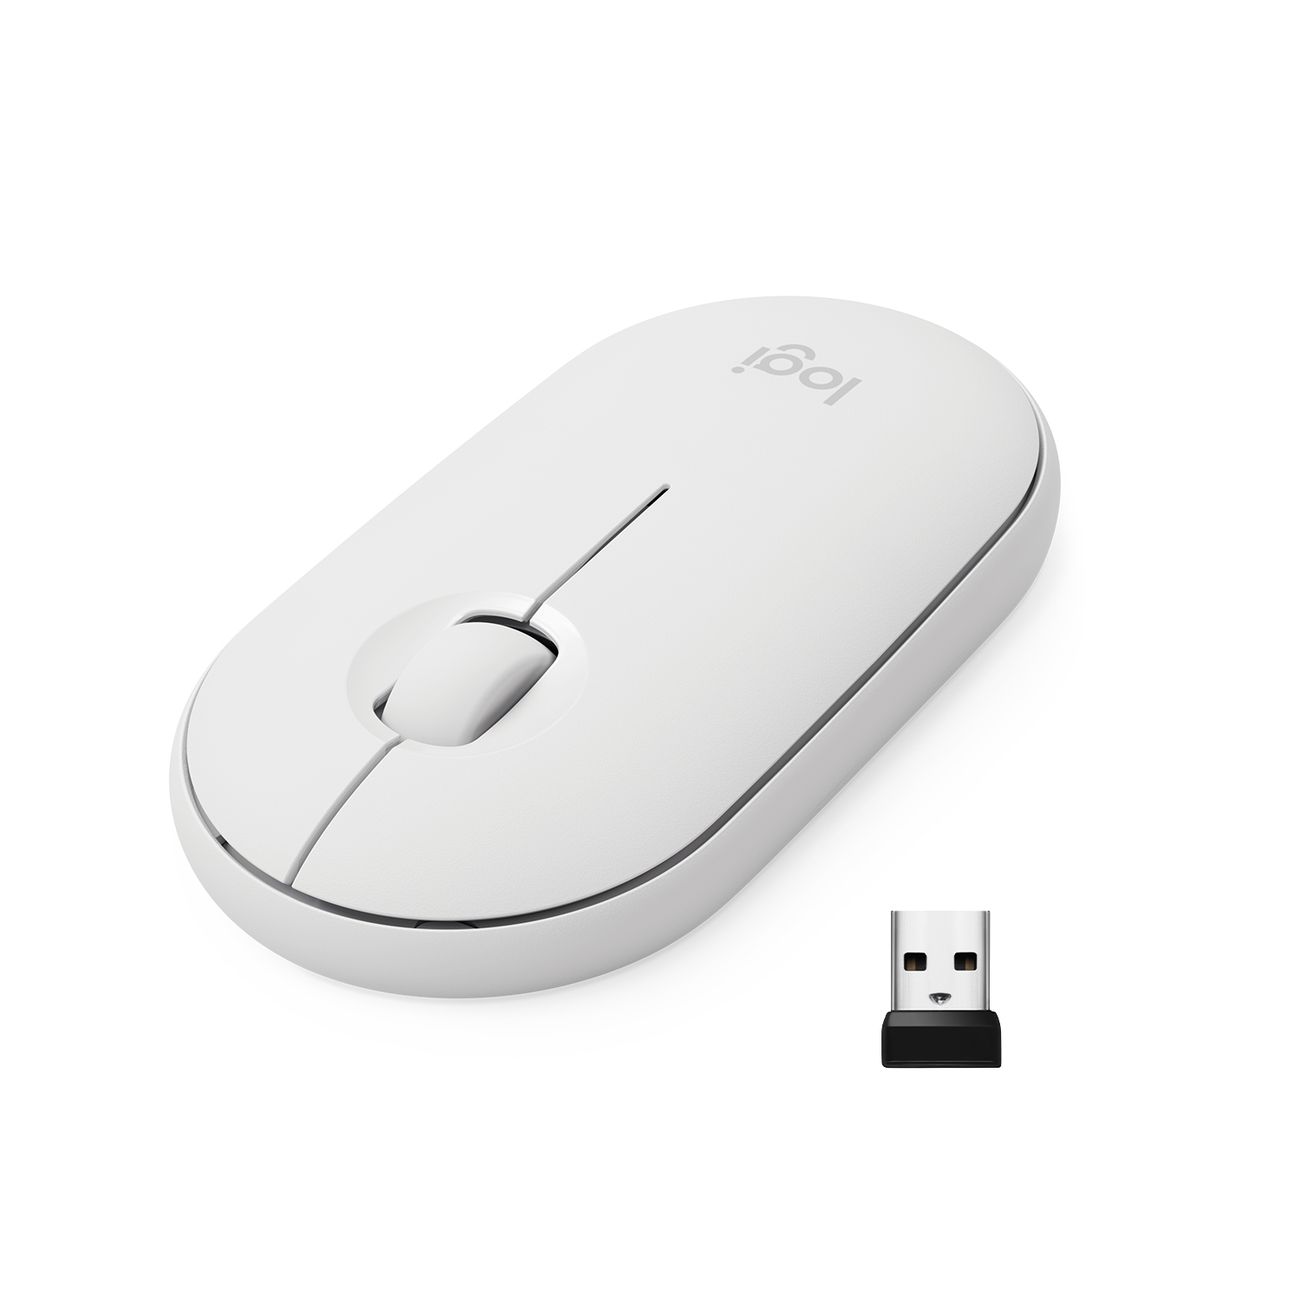 Мышь беспроводная Logitech M350 Pebble Mouse, white (910-005716) цена и фото